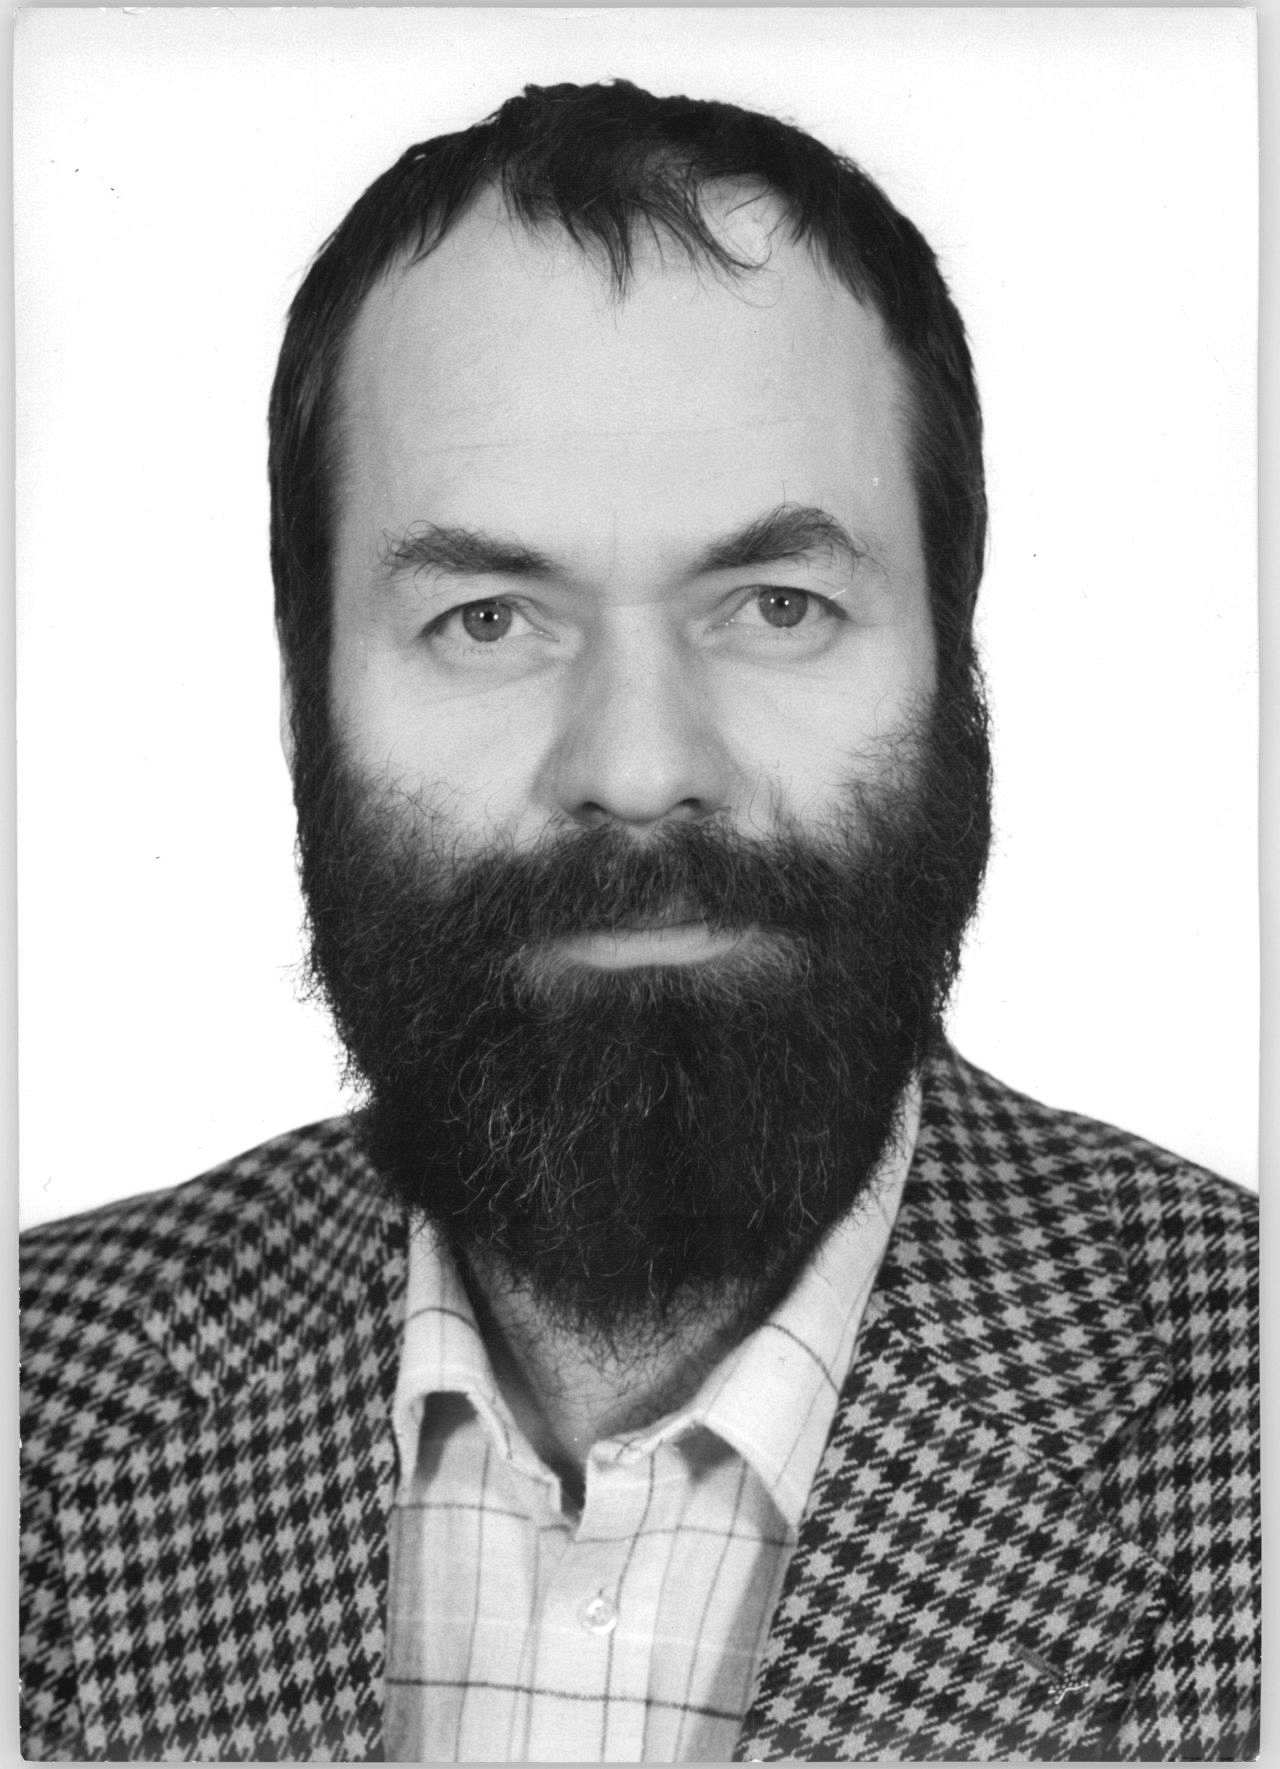 Porträtfoto des DDR-Oppositionellen, Theologen und Politikers Markus Meckel, 1990.